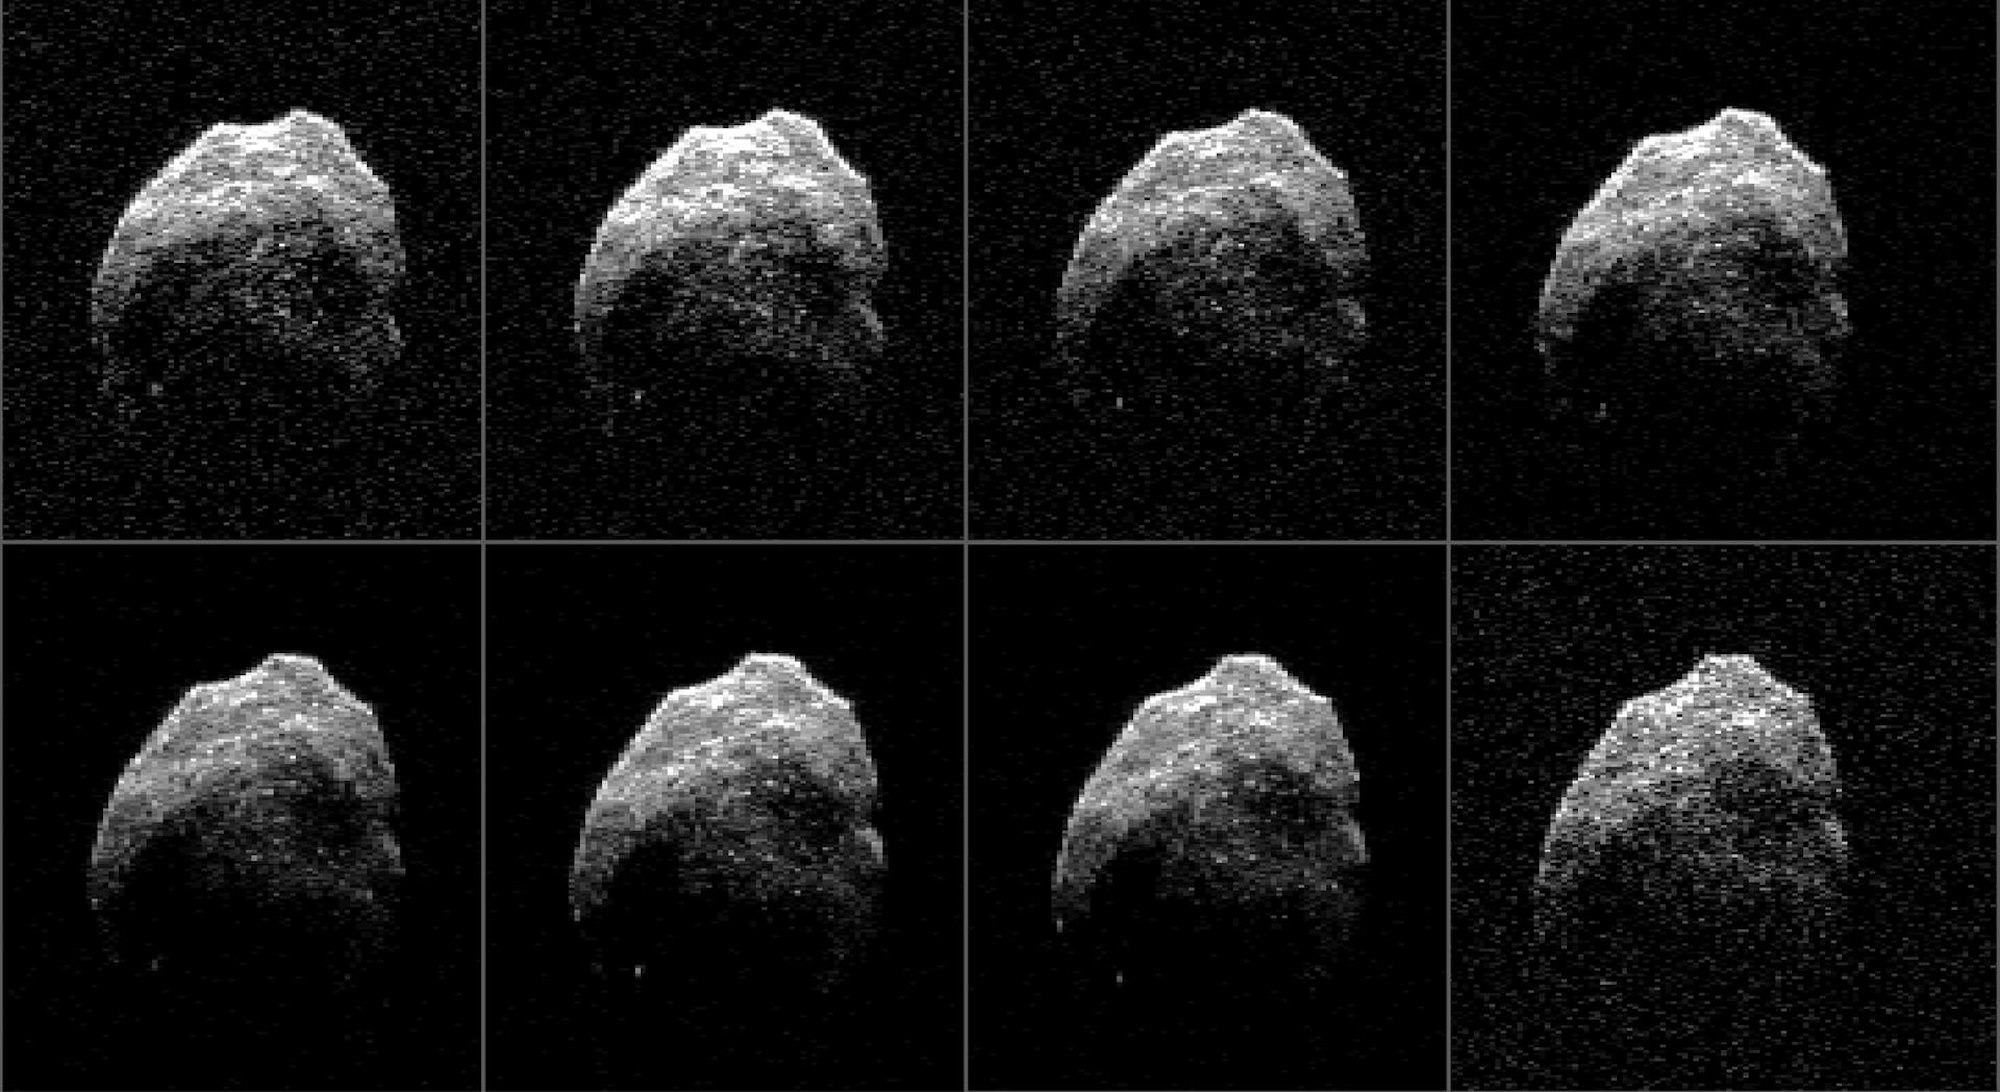 Asteroid_2010_TB45_dpa_5F9A92009D26F2A3